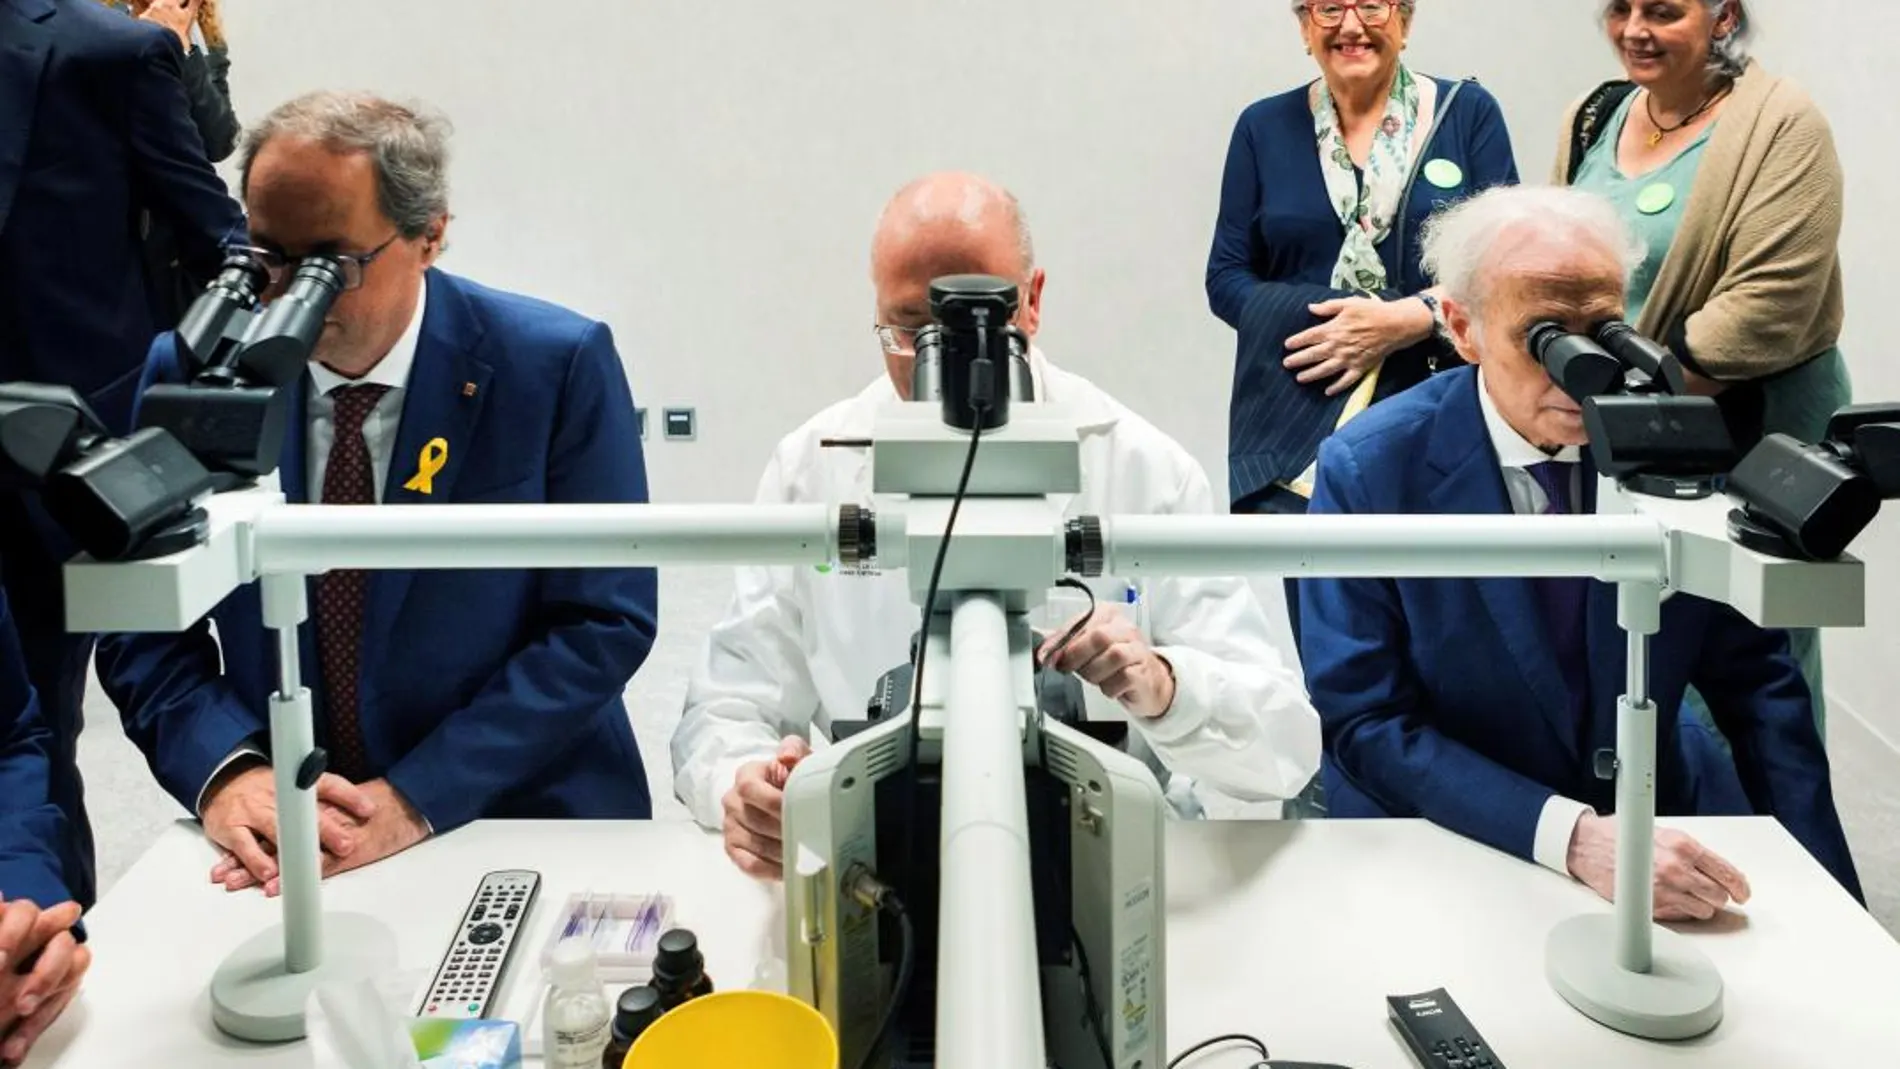 Josep Carreras y Quim Torra observan células junto al doctor Feliu: «Hasta ahora, ningún microscopio ha podido sustituir los ojos y el cerebro de un investigador» / Efe